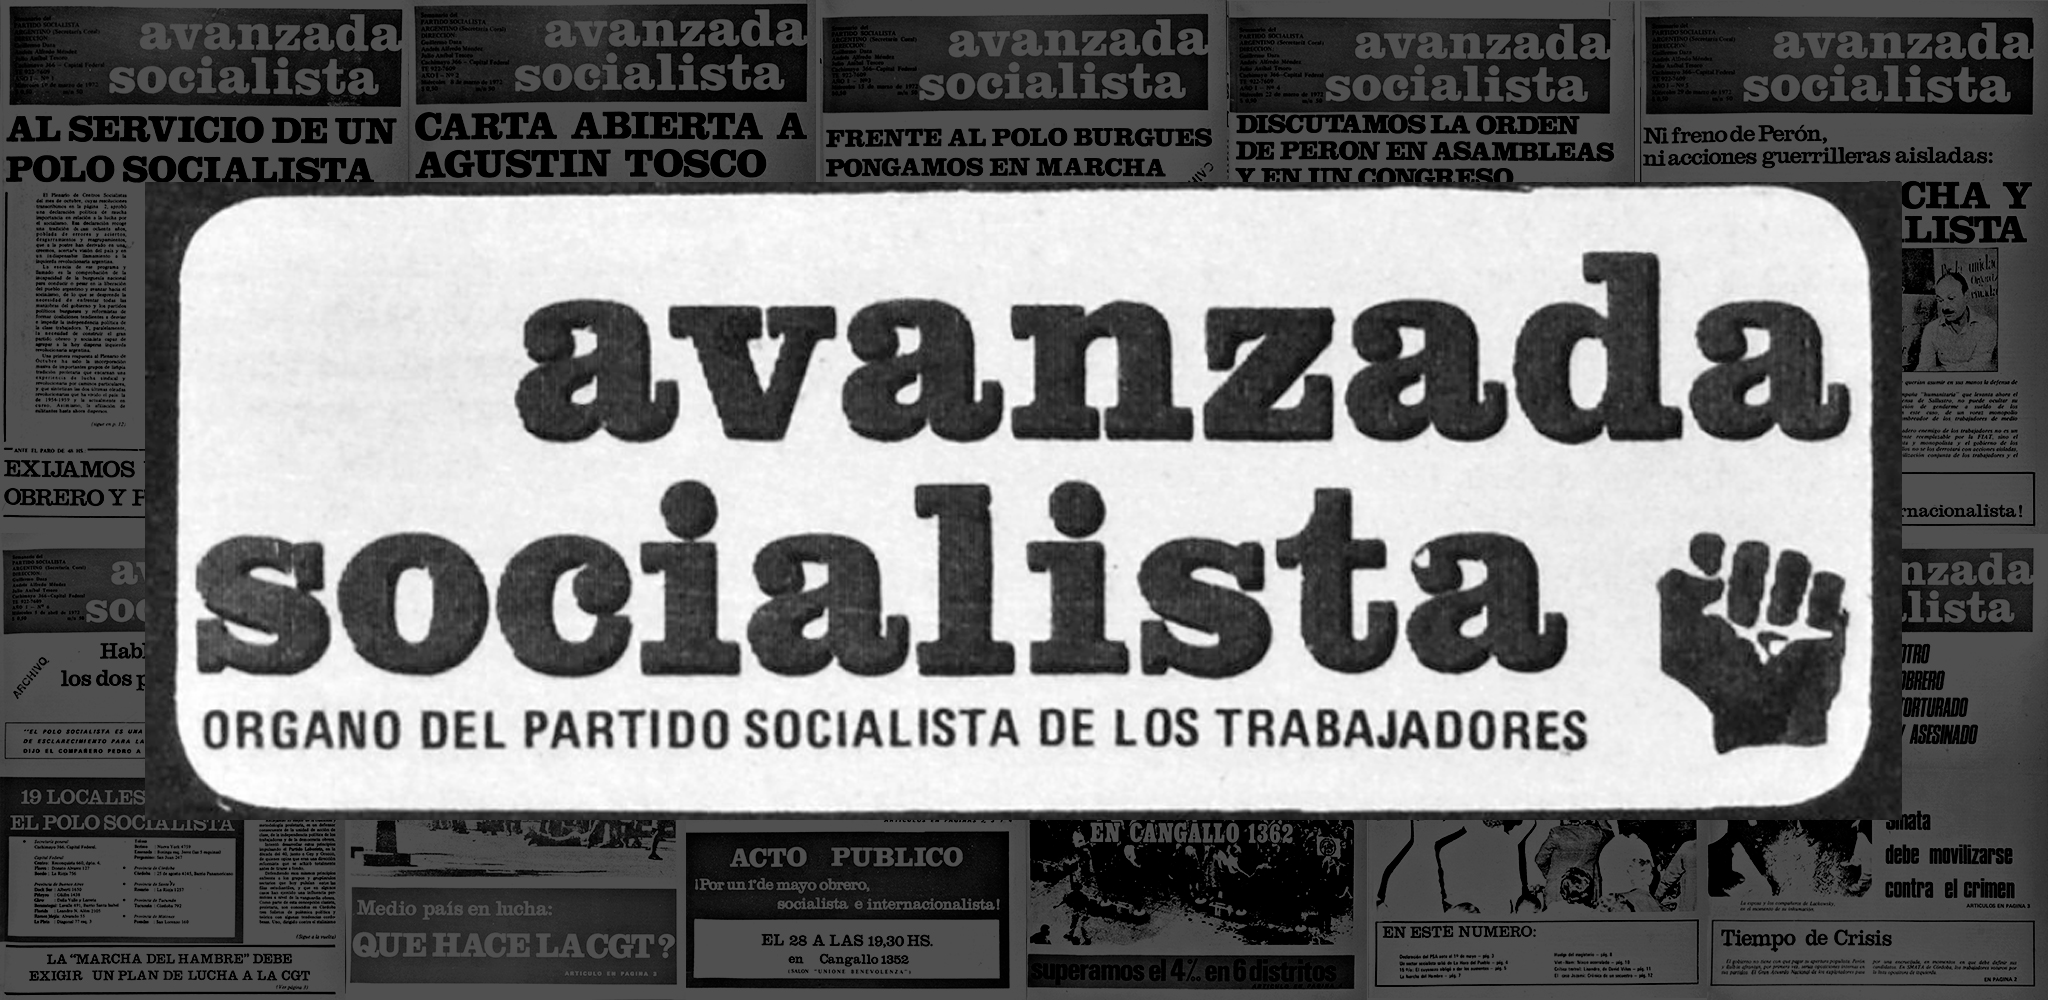 Avanzada Socialista (1975)